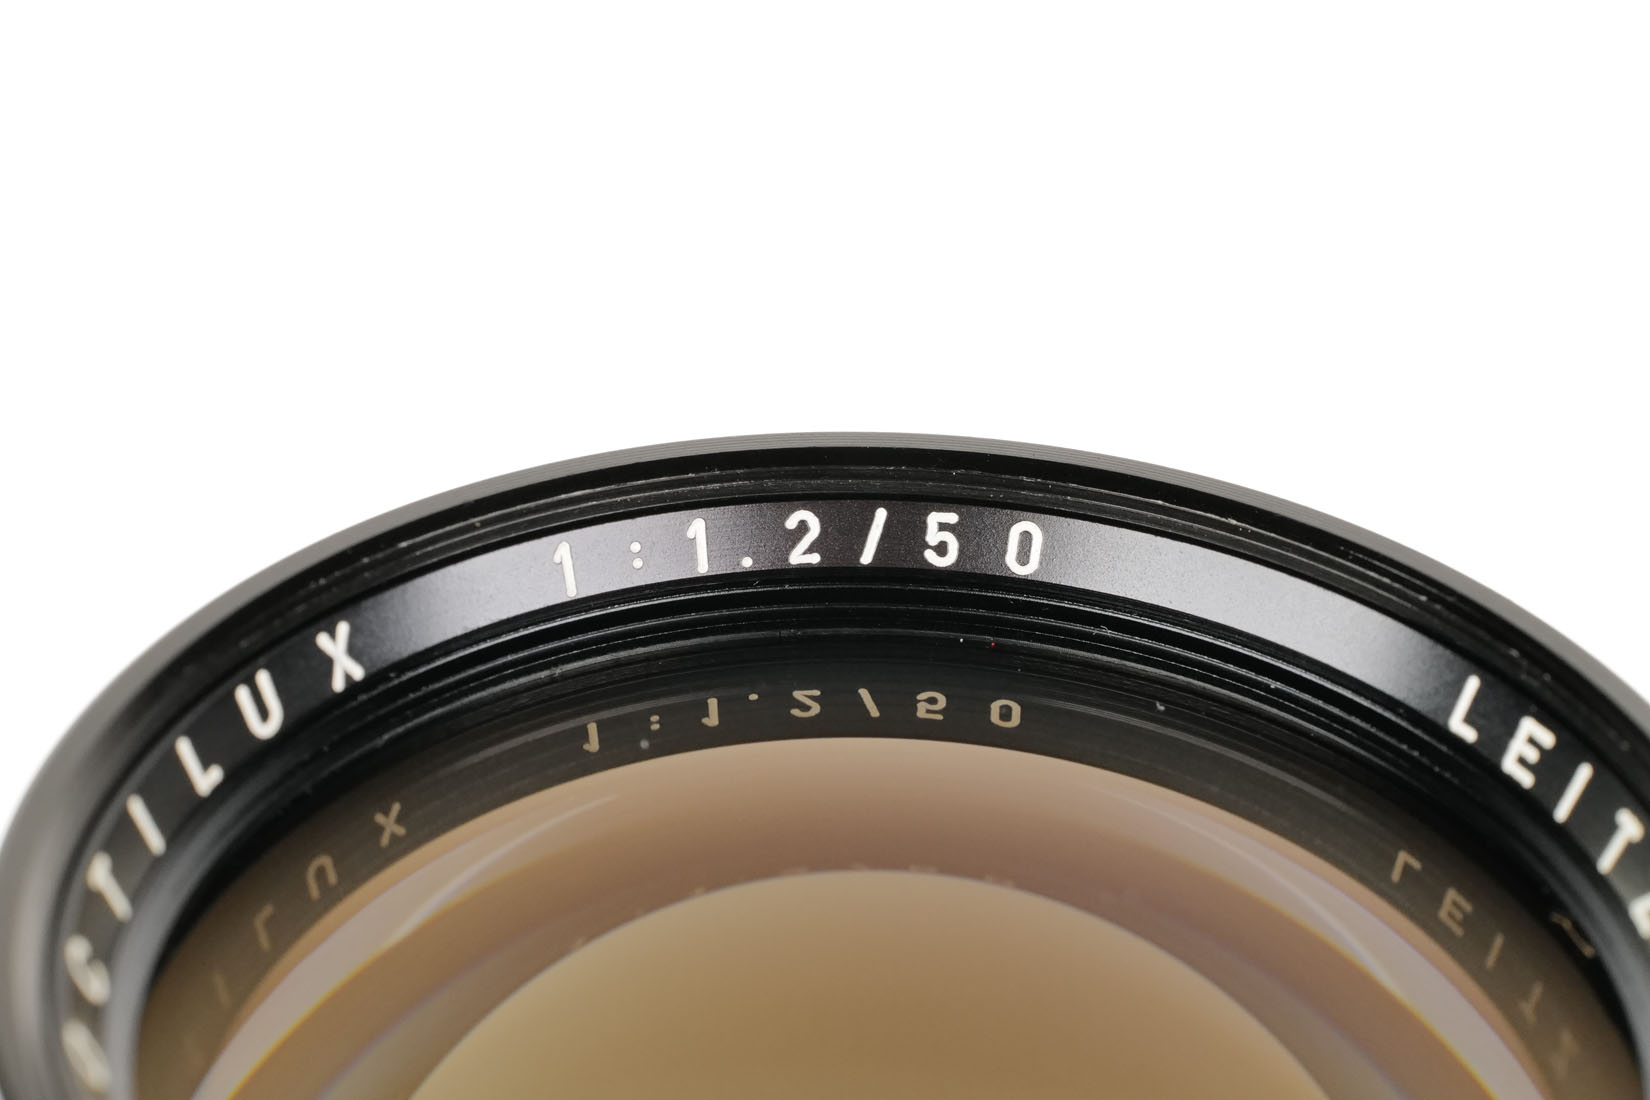 Leica NOCTILUX-M 1:1,2/50mm 11820